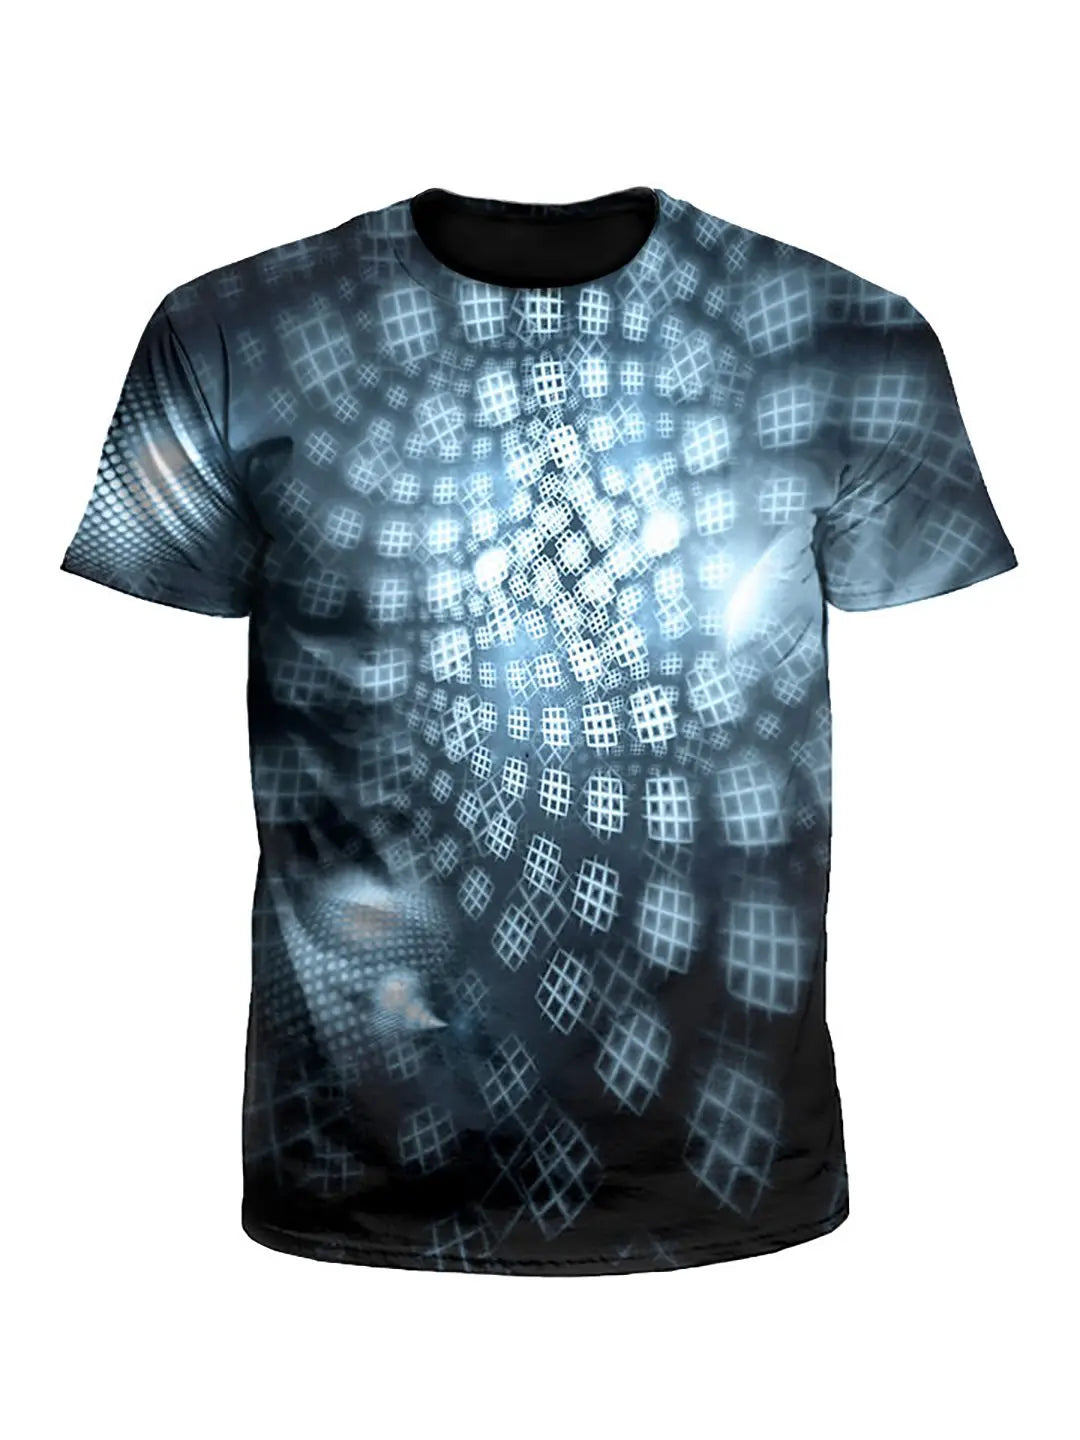 Honeycombs Geometric Fractal Unisex T-Shirt - Boogie Threads